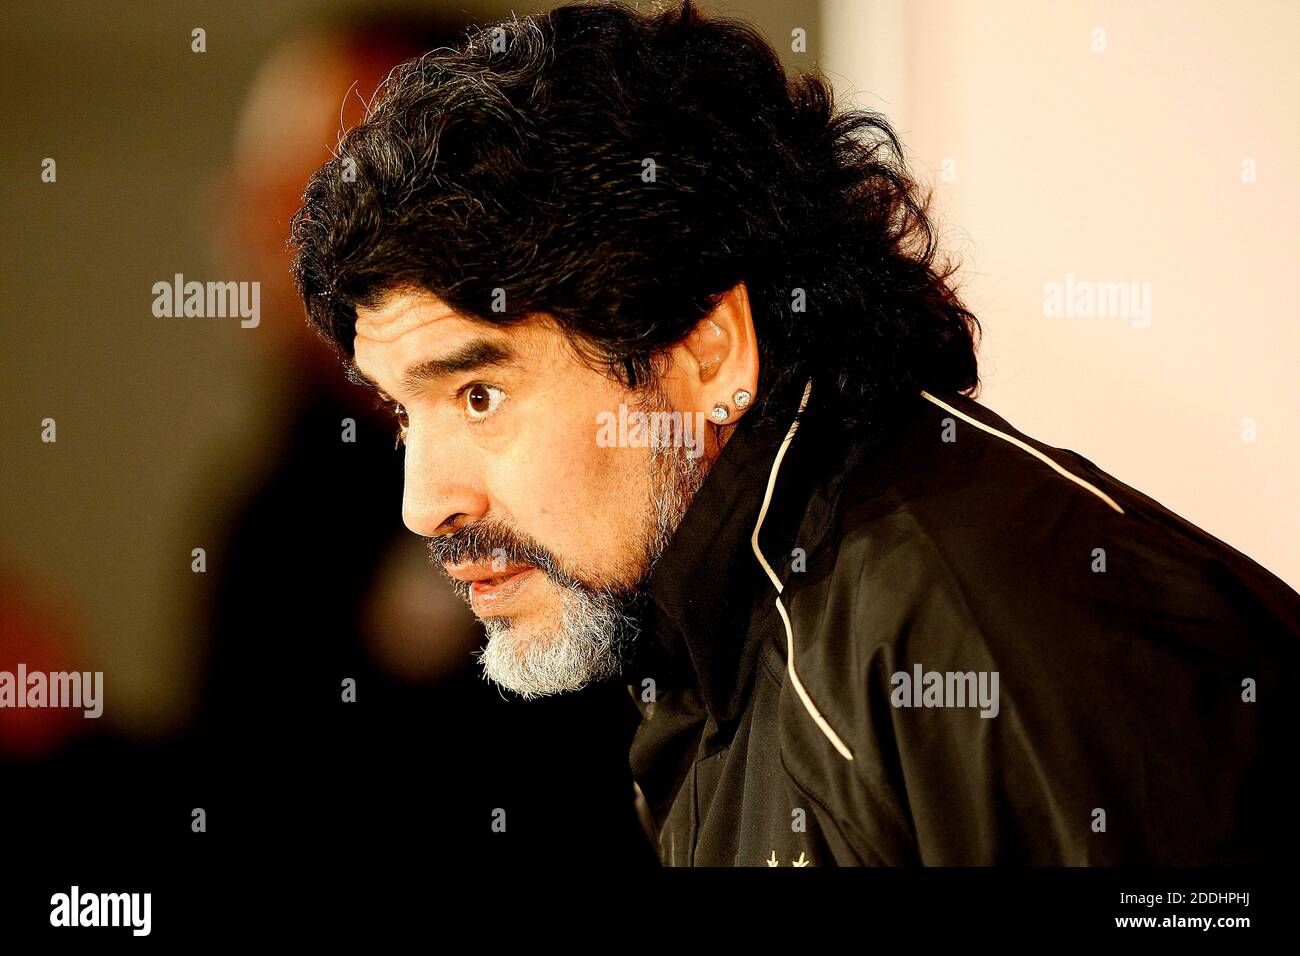 25 novembre 2020; Stock picture from archive; l'ex giocatore argentino, Diego Maradona, muore all'età di 60 anni, dopo che l'ex centrocampista argentino attaccante e manager ha subito un attacco di cuore nella sua casa di Buenos Aires. Foto Stock